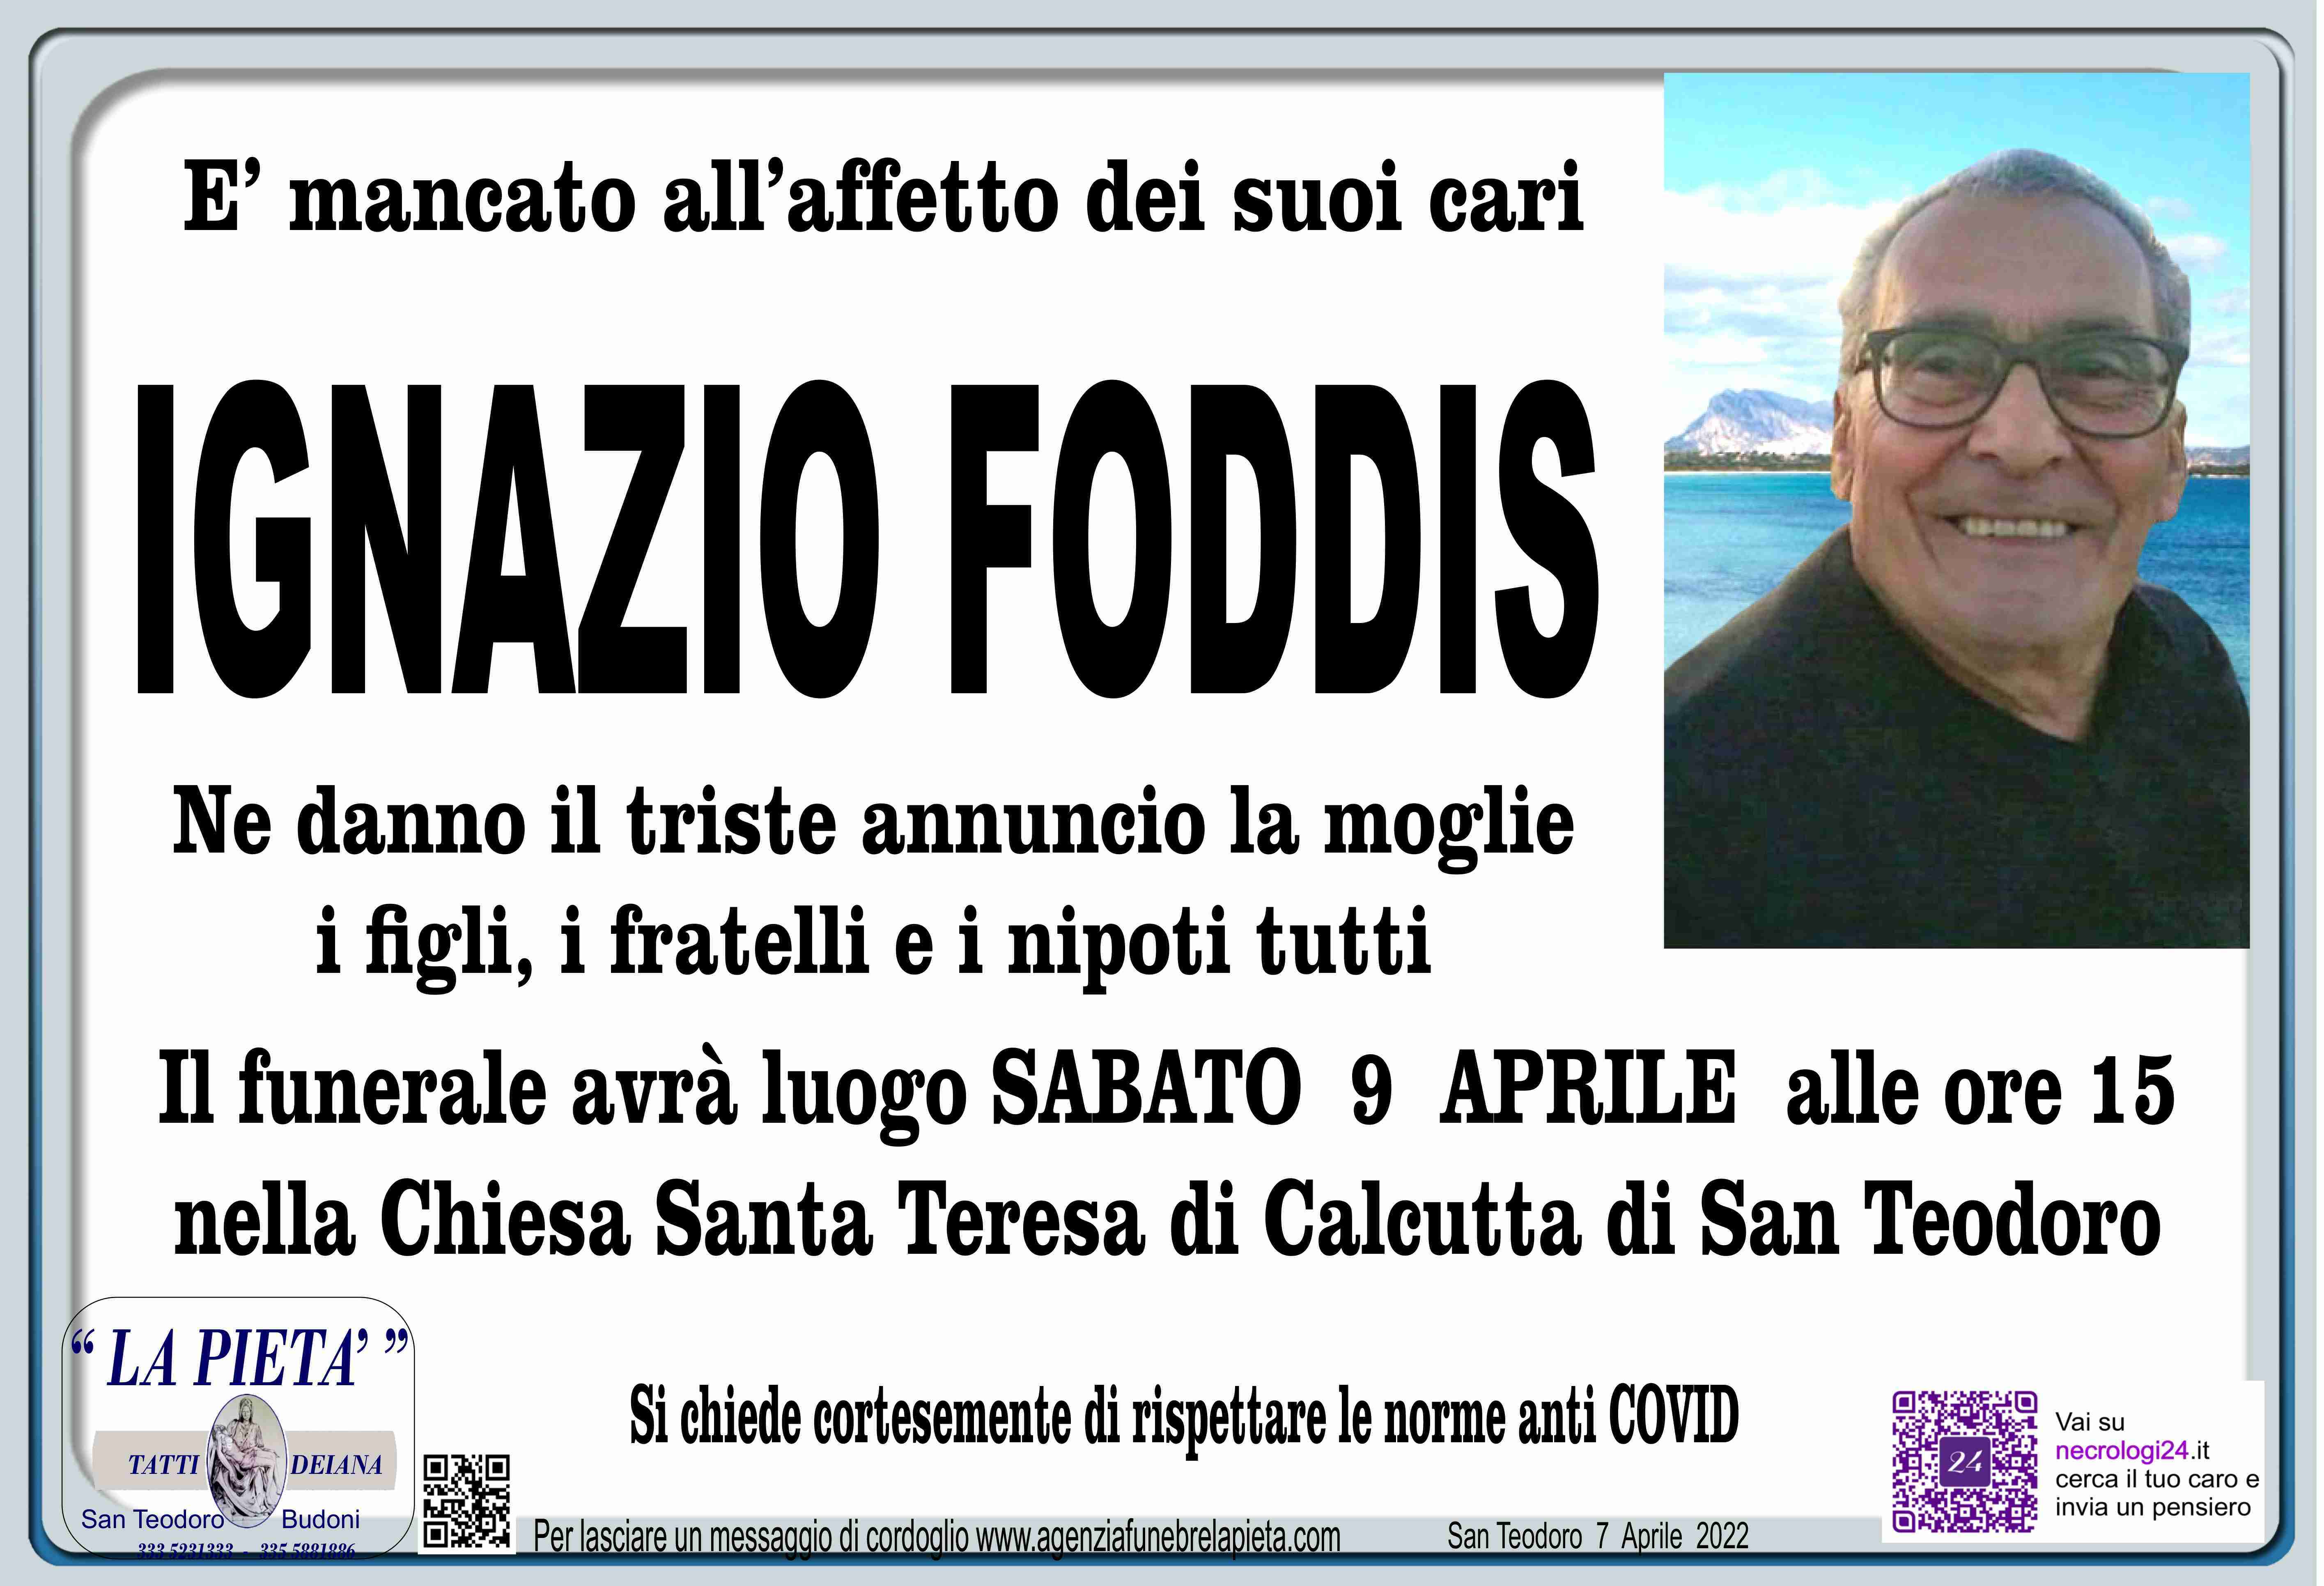 Ignazio Foddis